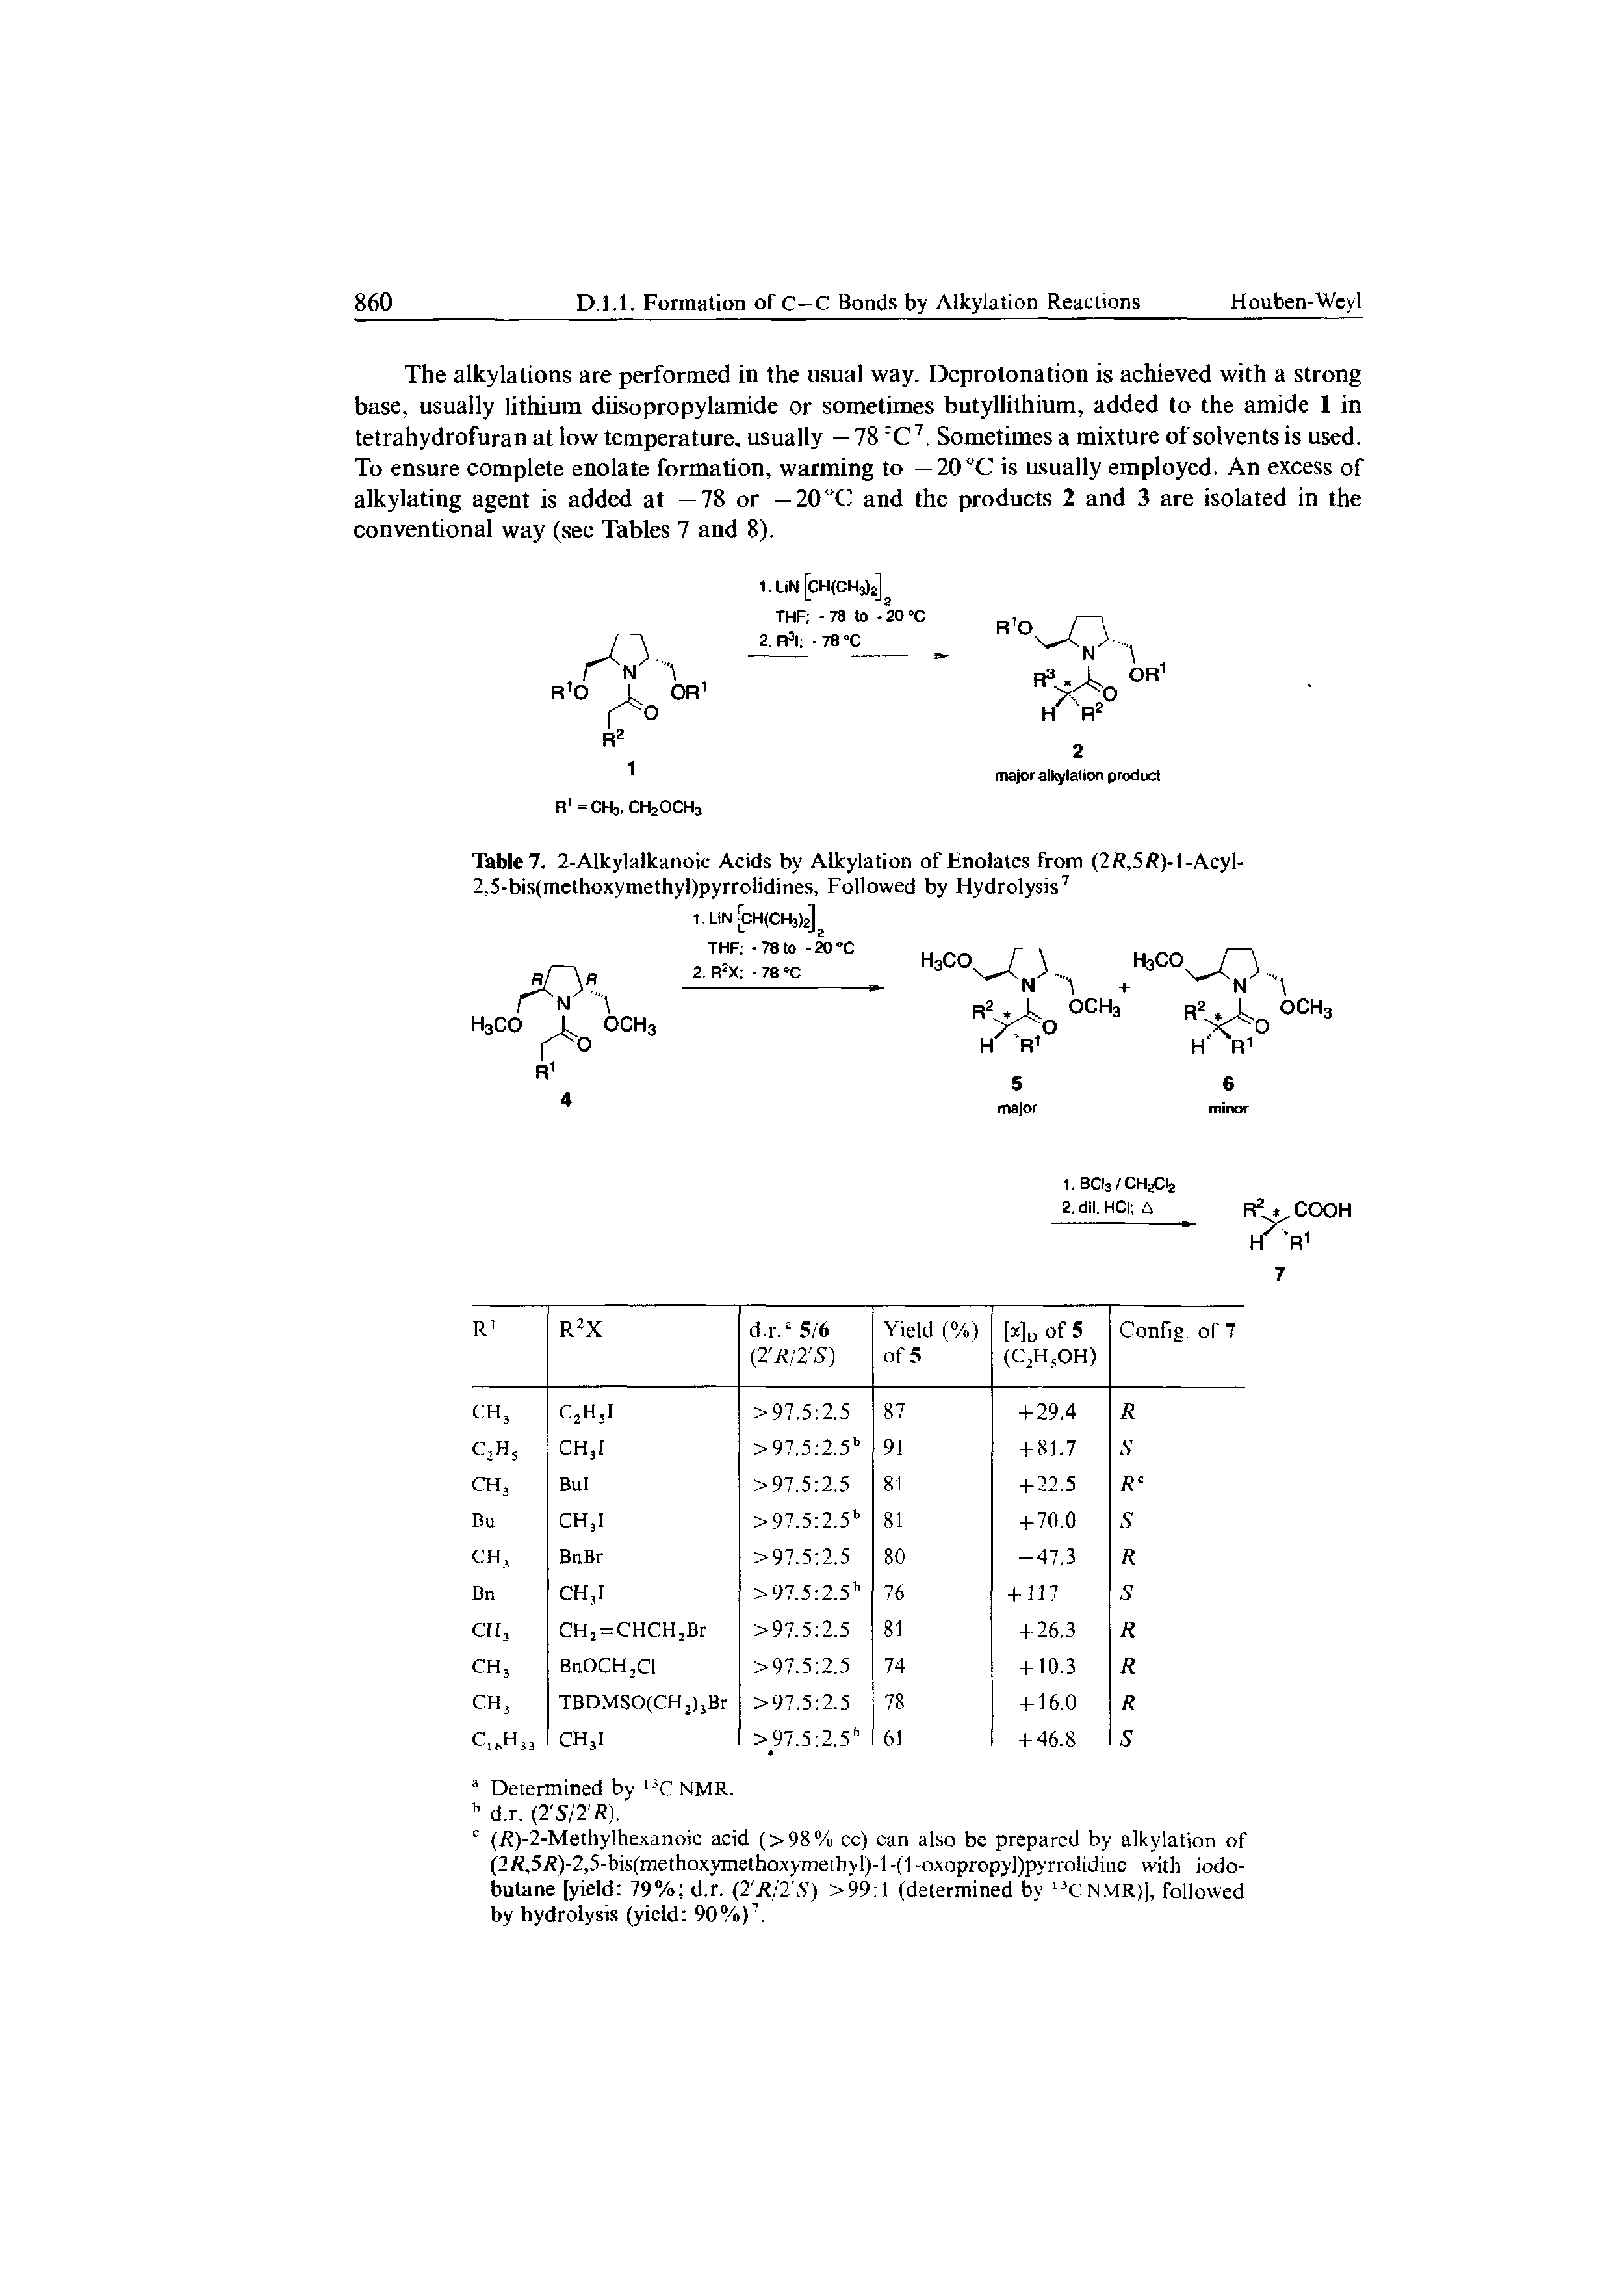 Table 7. 2-Alkylalkanoic Acids by Alkylation of Enolates from (2R,5R)-1-Acyl-2,5-bis(methoxymethyl)pyrrolidines, Followed by Hydrolysis7...